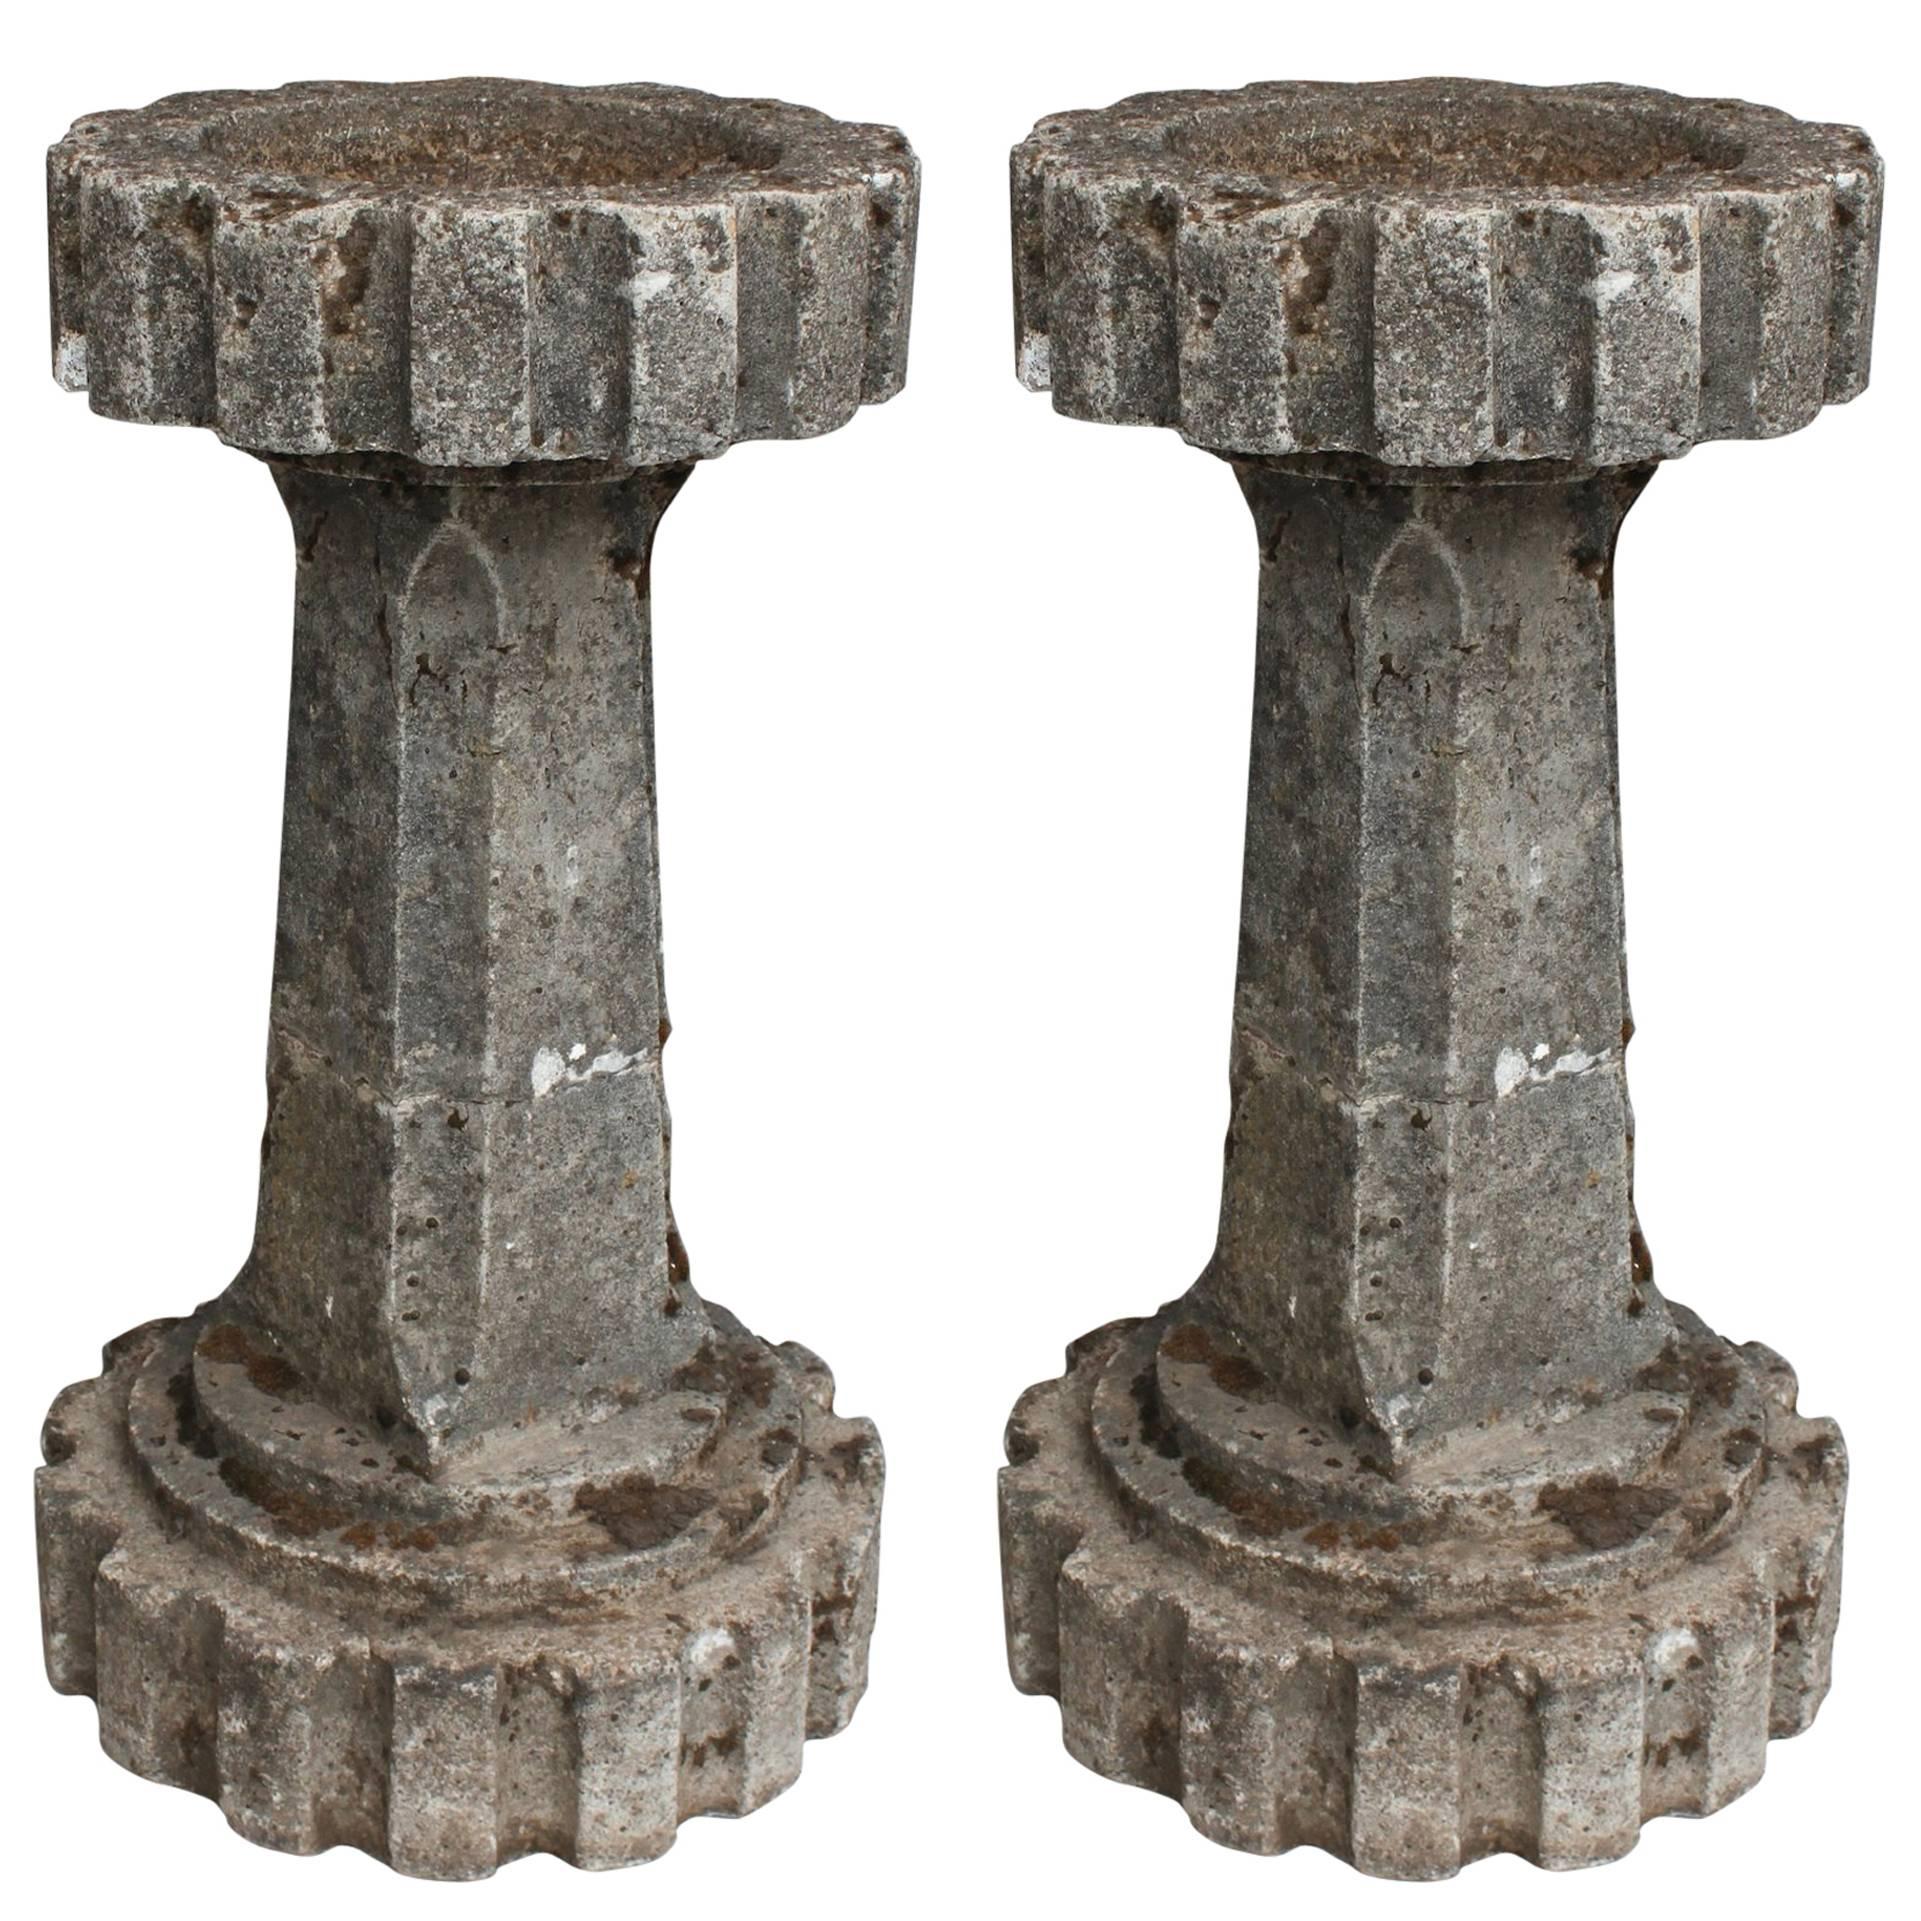 Pair of Garden Stone Bird Baths / Decorative Columns For Sale